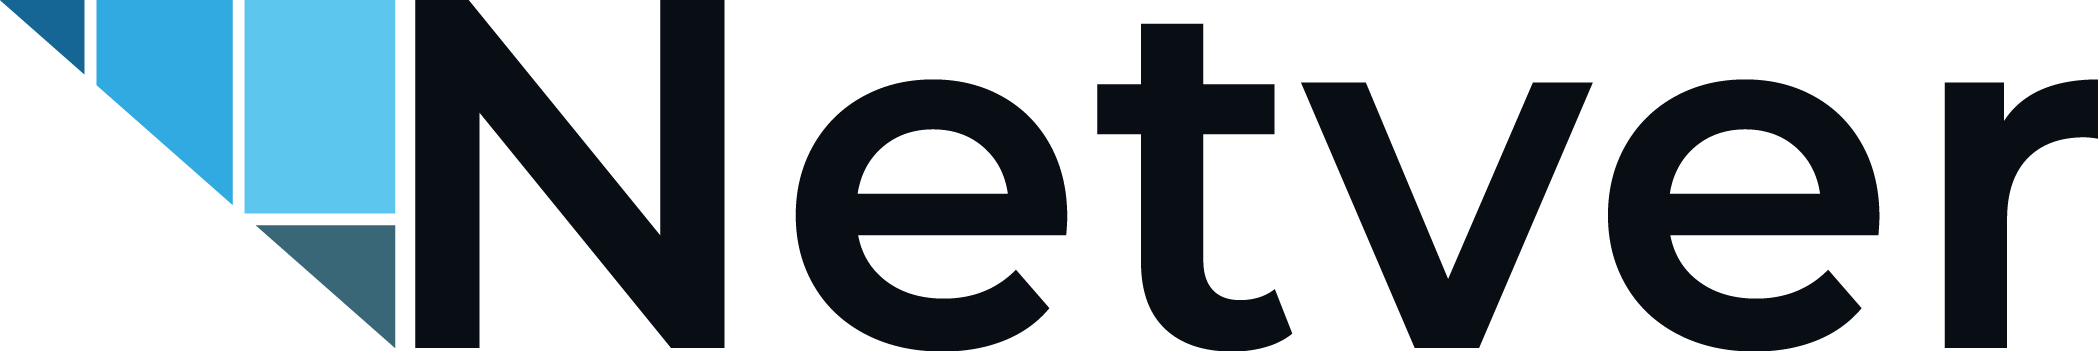 NETVER logo